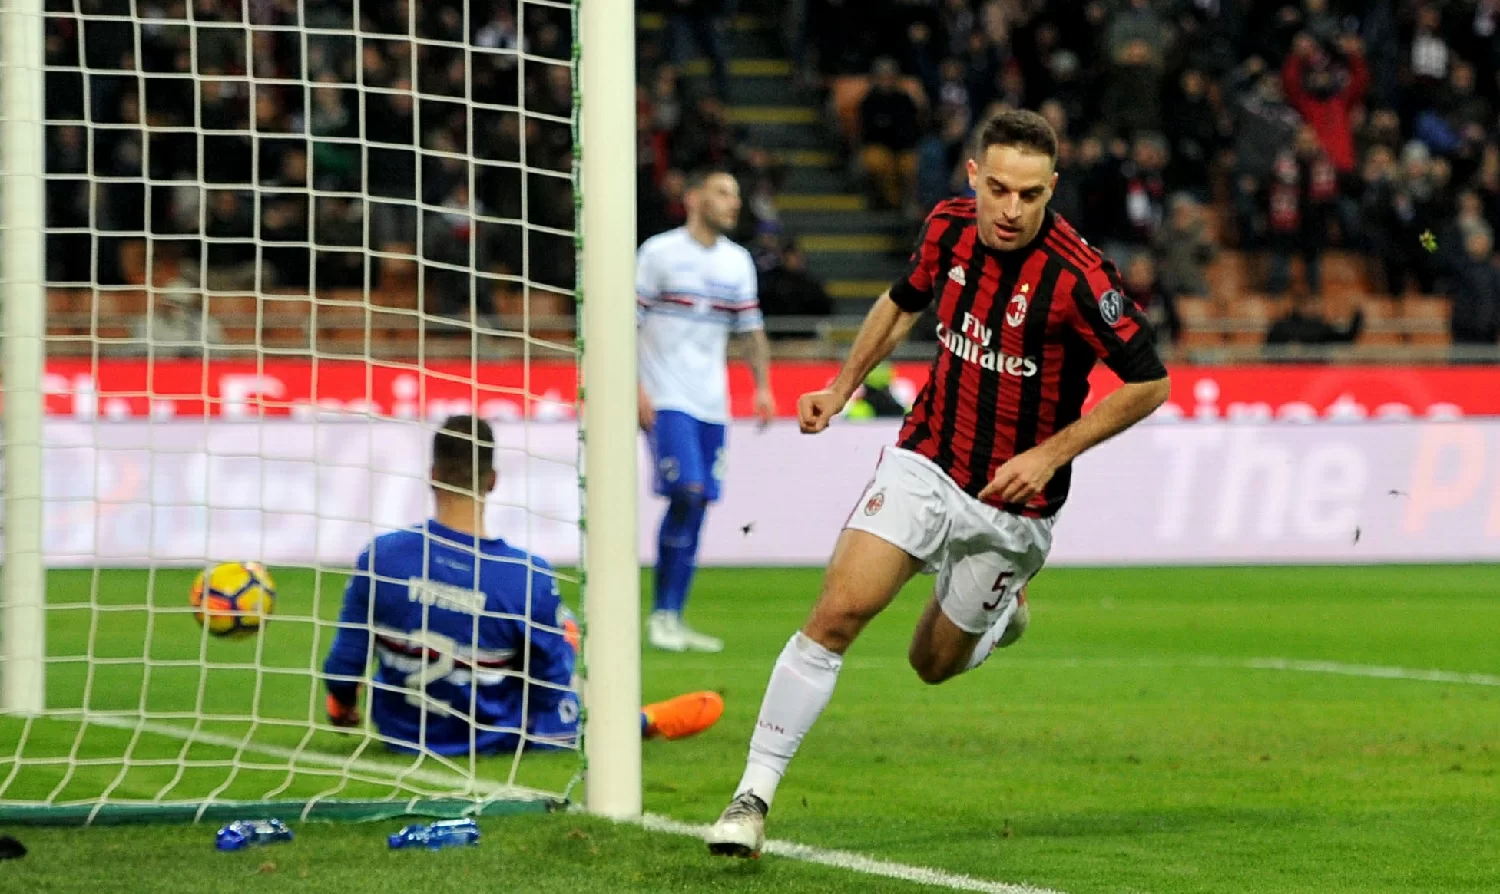 SM FOTO/ Gli scatti del primo tempo di Milan-Sampdoria